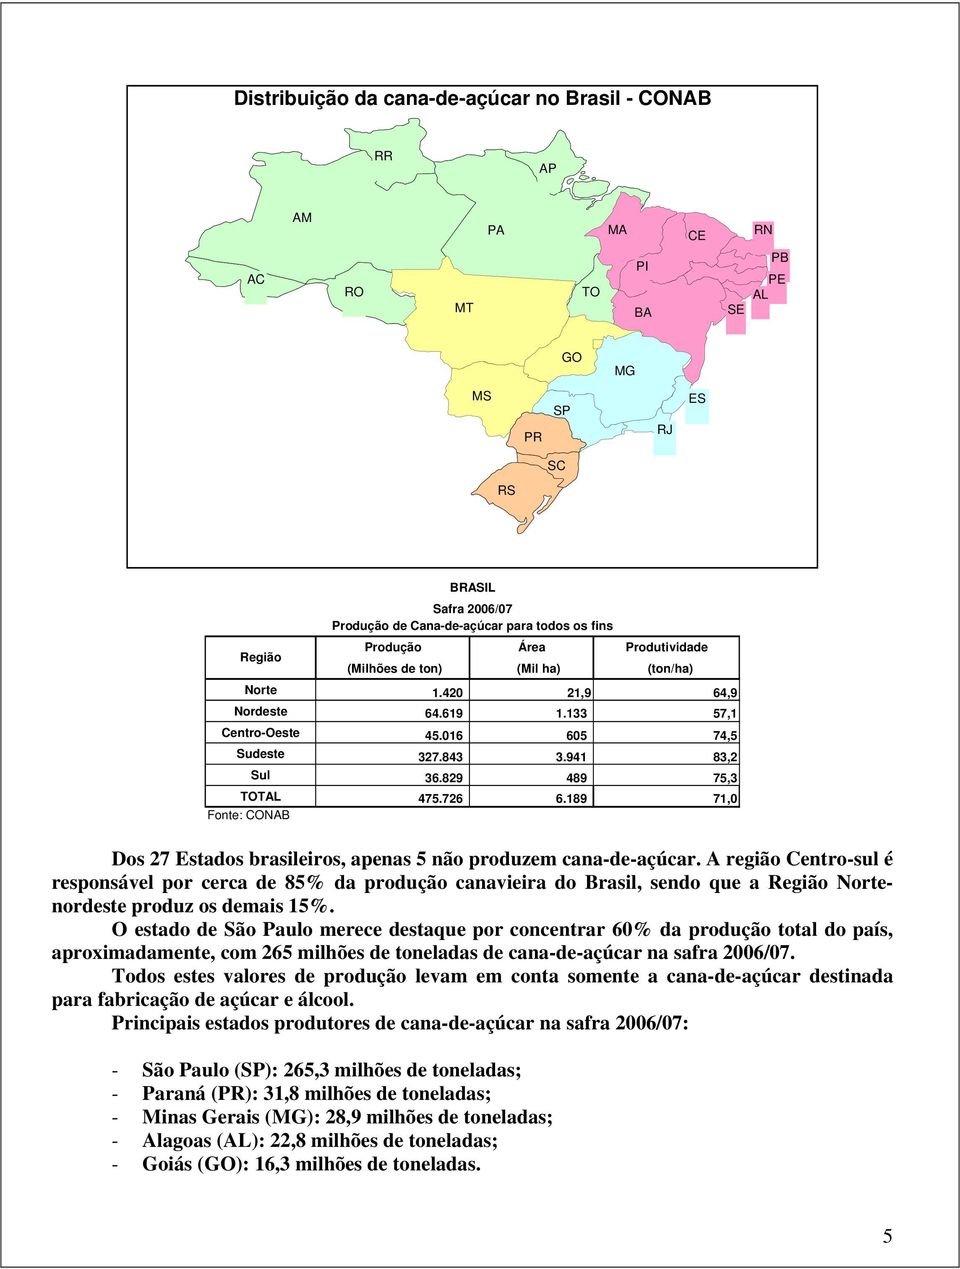 829 489 75,3 TOTAL 475.726 6.189 71,0 Fonte: CONAB Dos 27 Estados brasileiros, apenas 5 não produzem cana-de-açúcar.